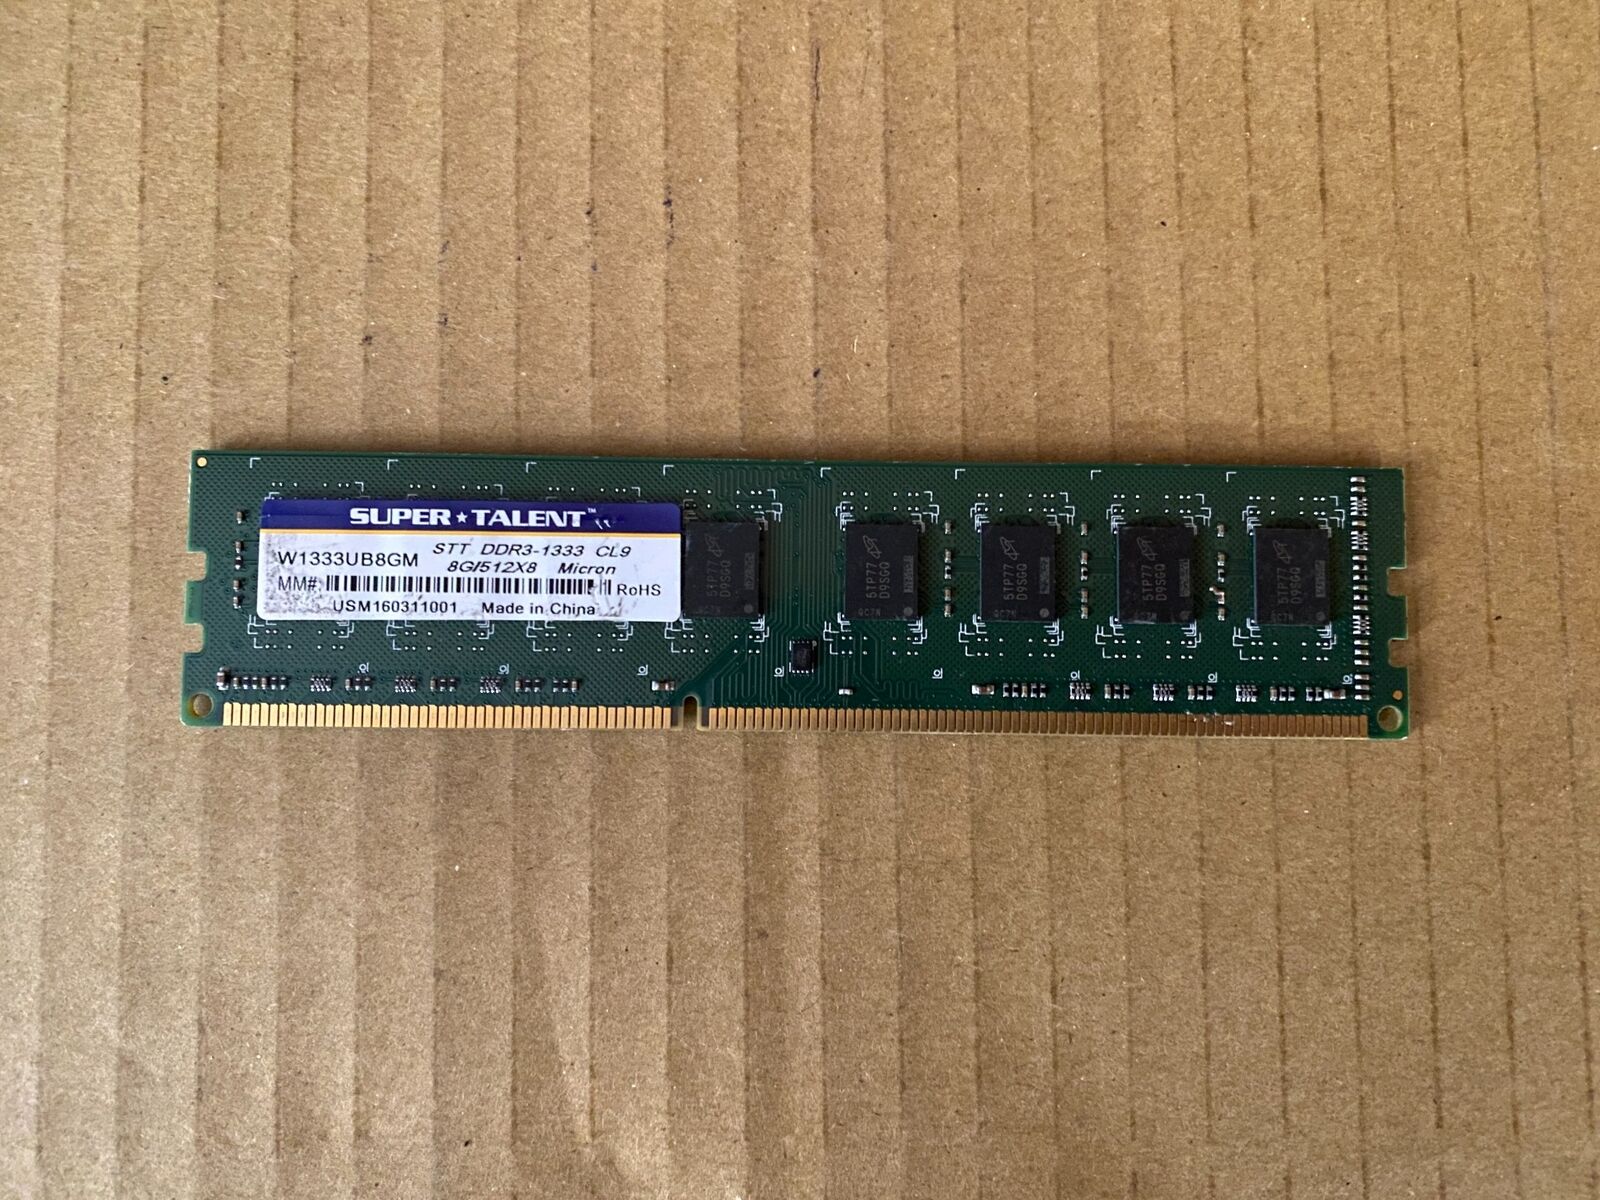 SUPER TALENT 8GB  W1333UB8GM  DDR3 1333MHZ PC3-10600 DESKTOP RAM MEMORY W3-2(30)